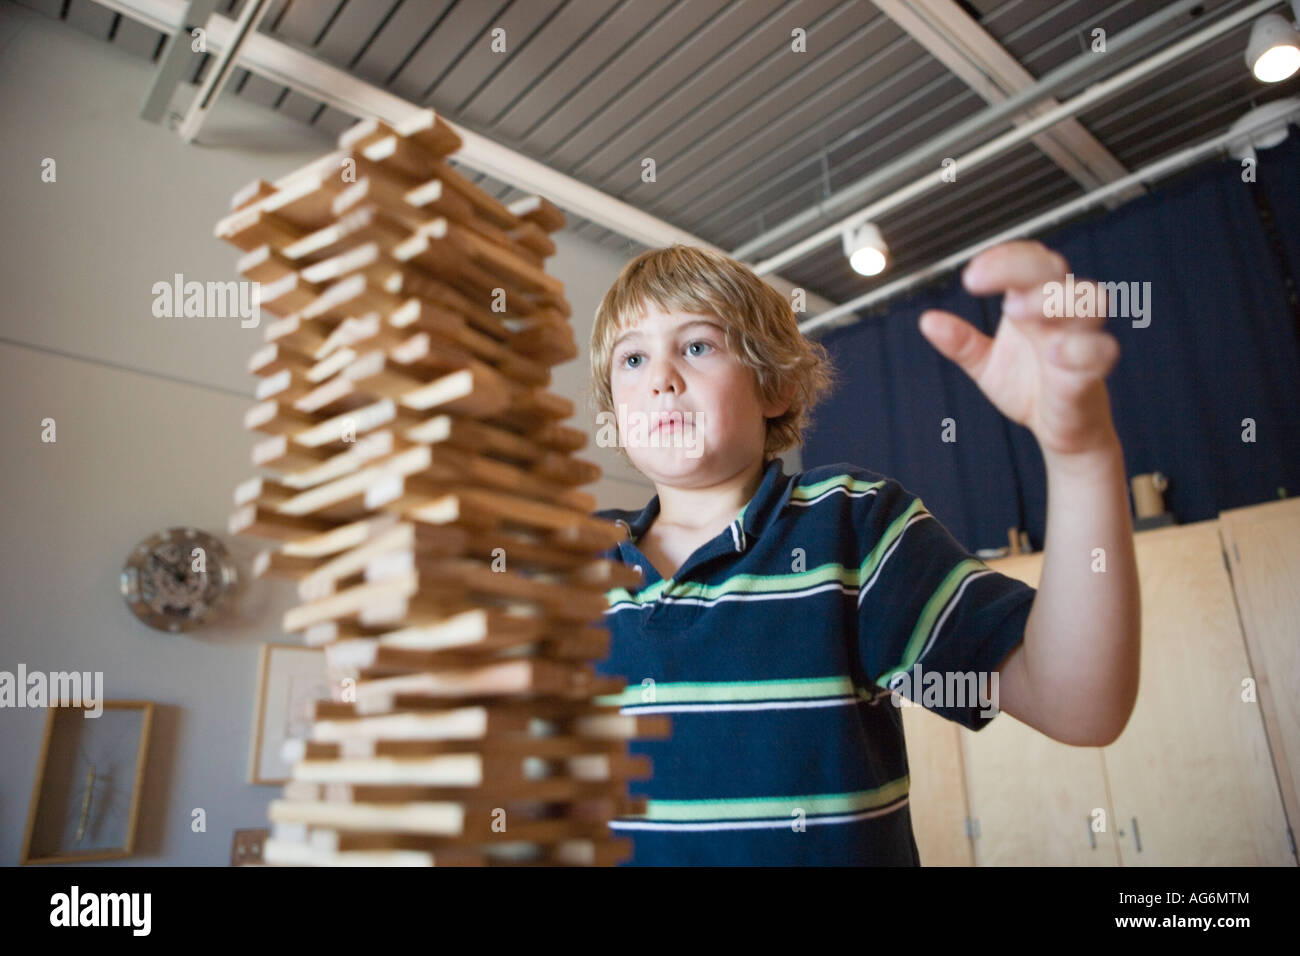 acht Jahre alten Jungen Stapeln Holzblöcke so hoch, wie er kann beobachten, um sicherzustellen, dass sie nicht umfallen, Stockfoto